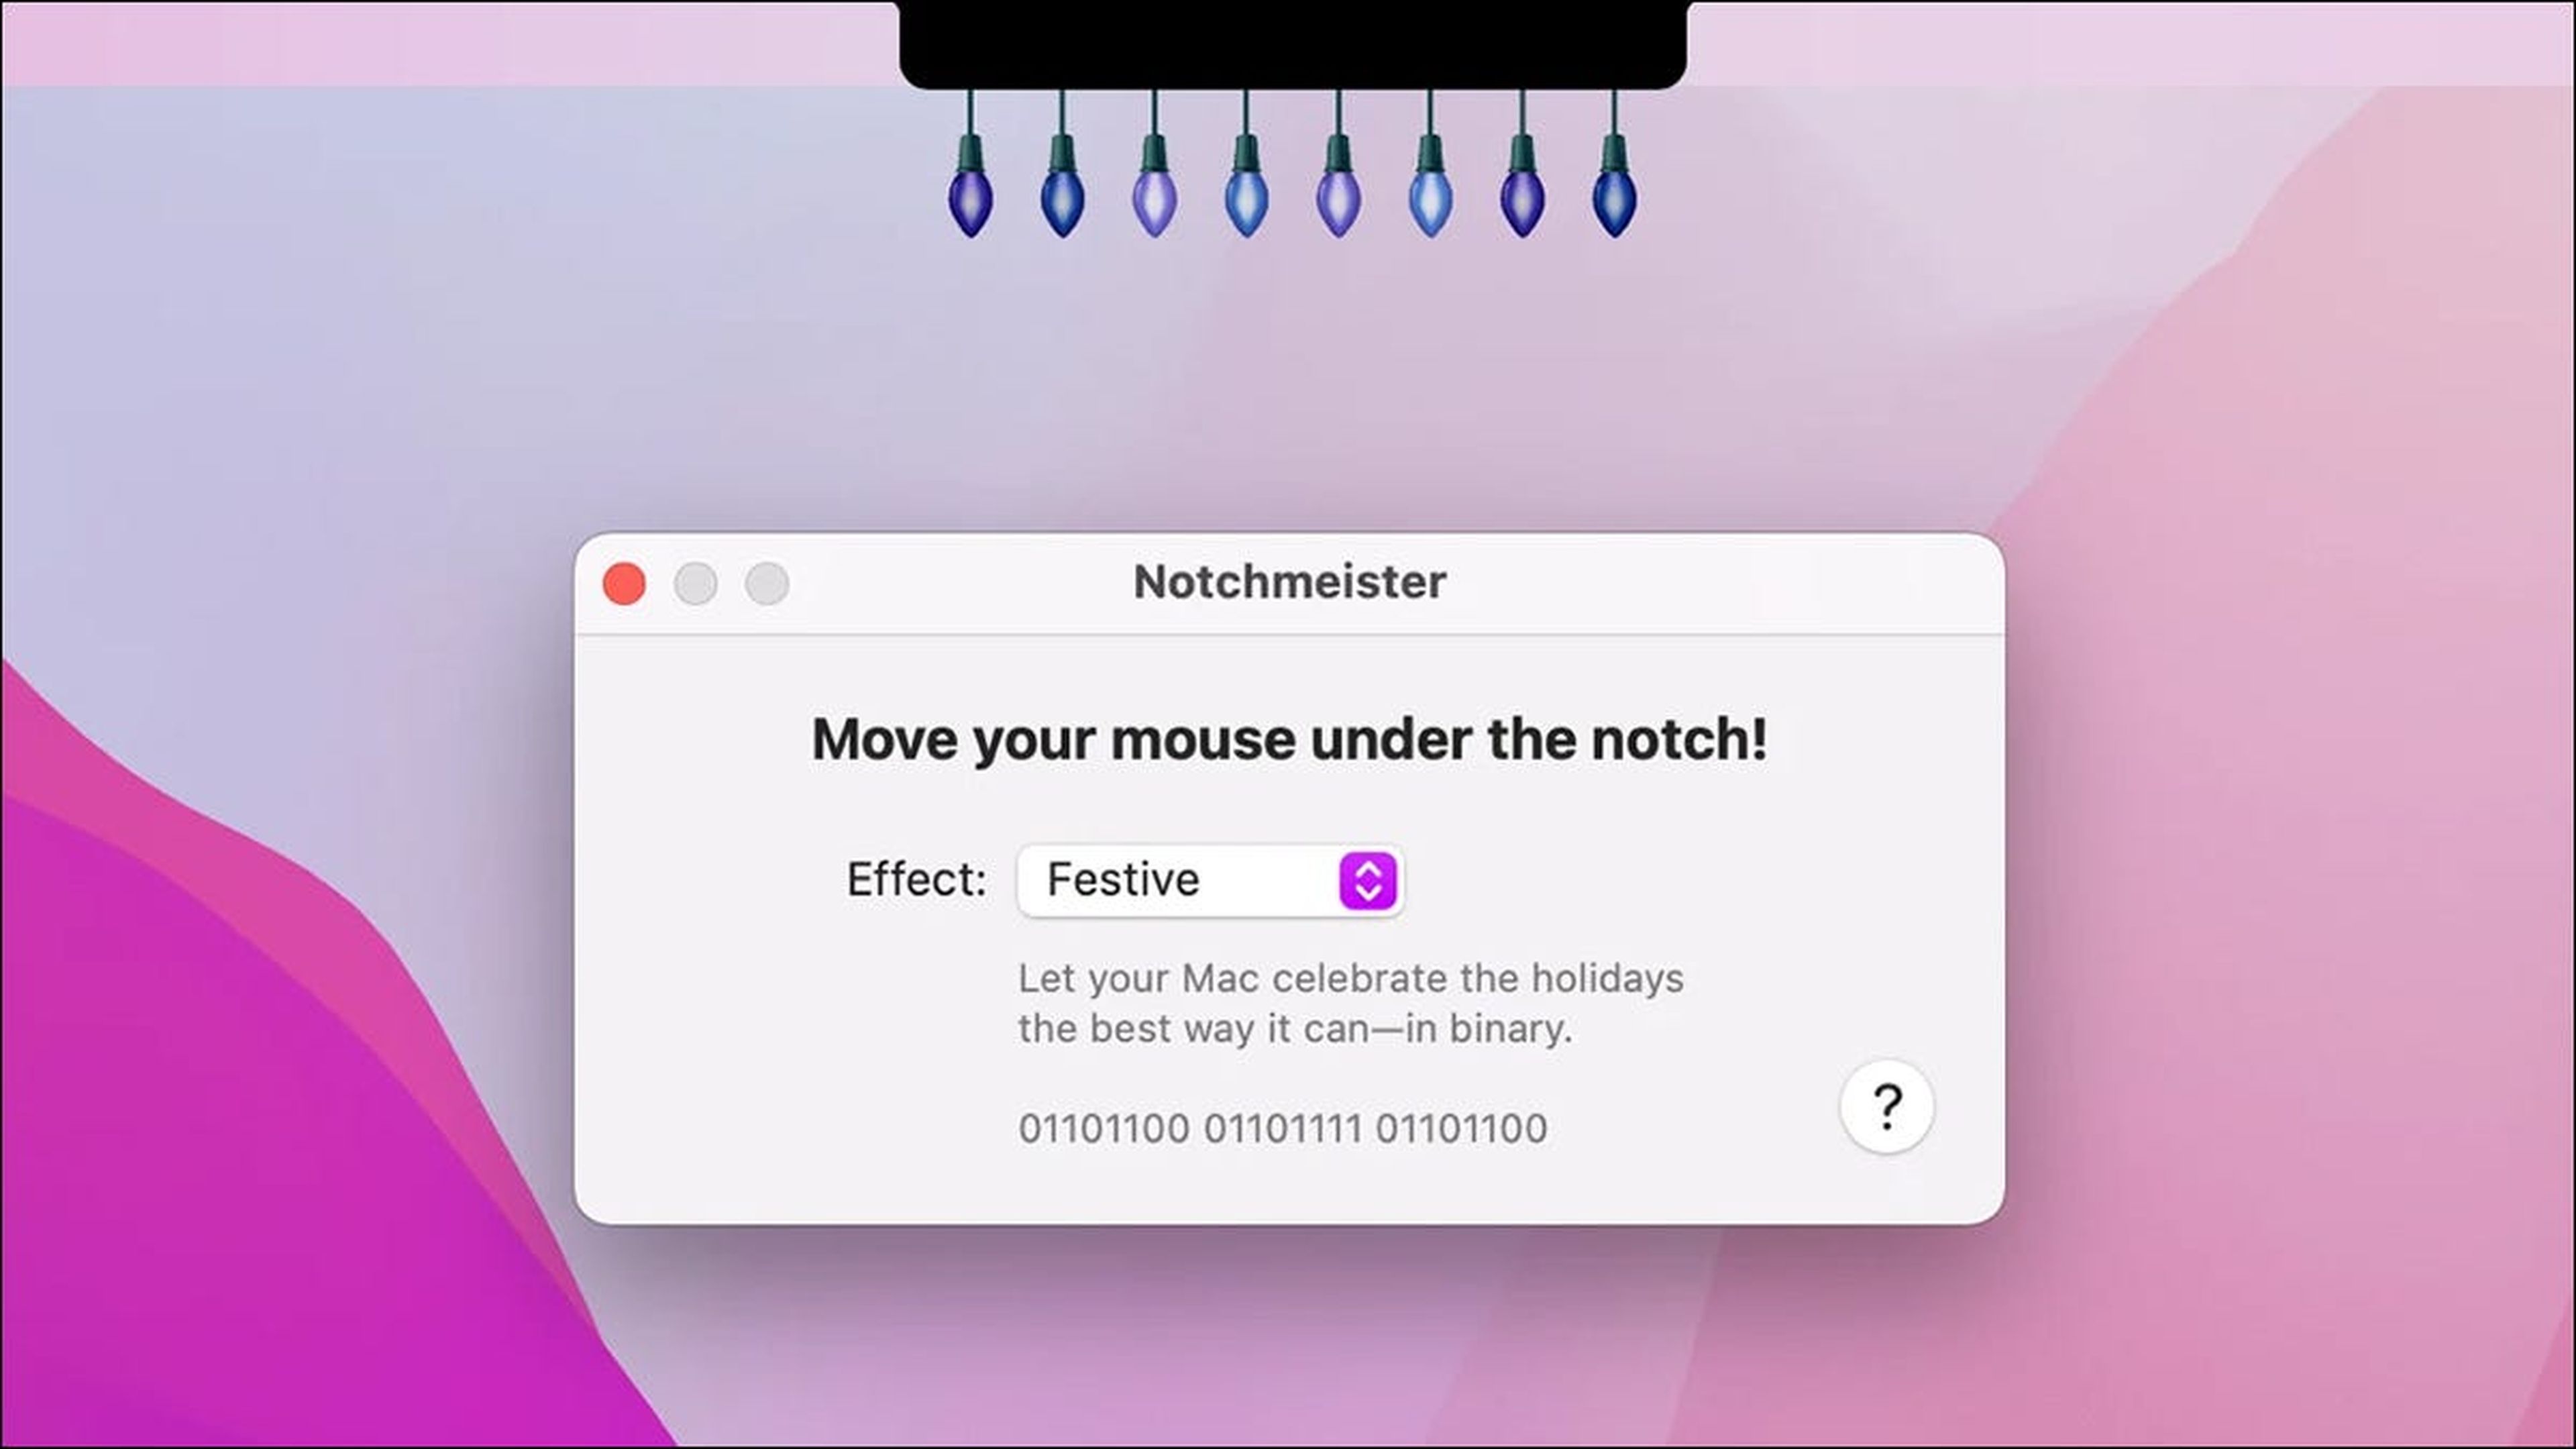 La solución para ocultar el notch en los nuevos Macbook llega en forma de app para adornarlo